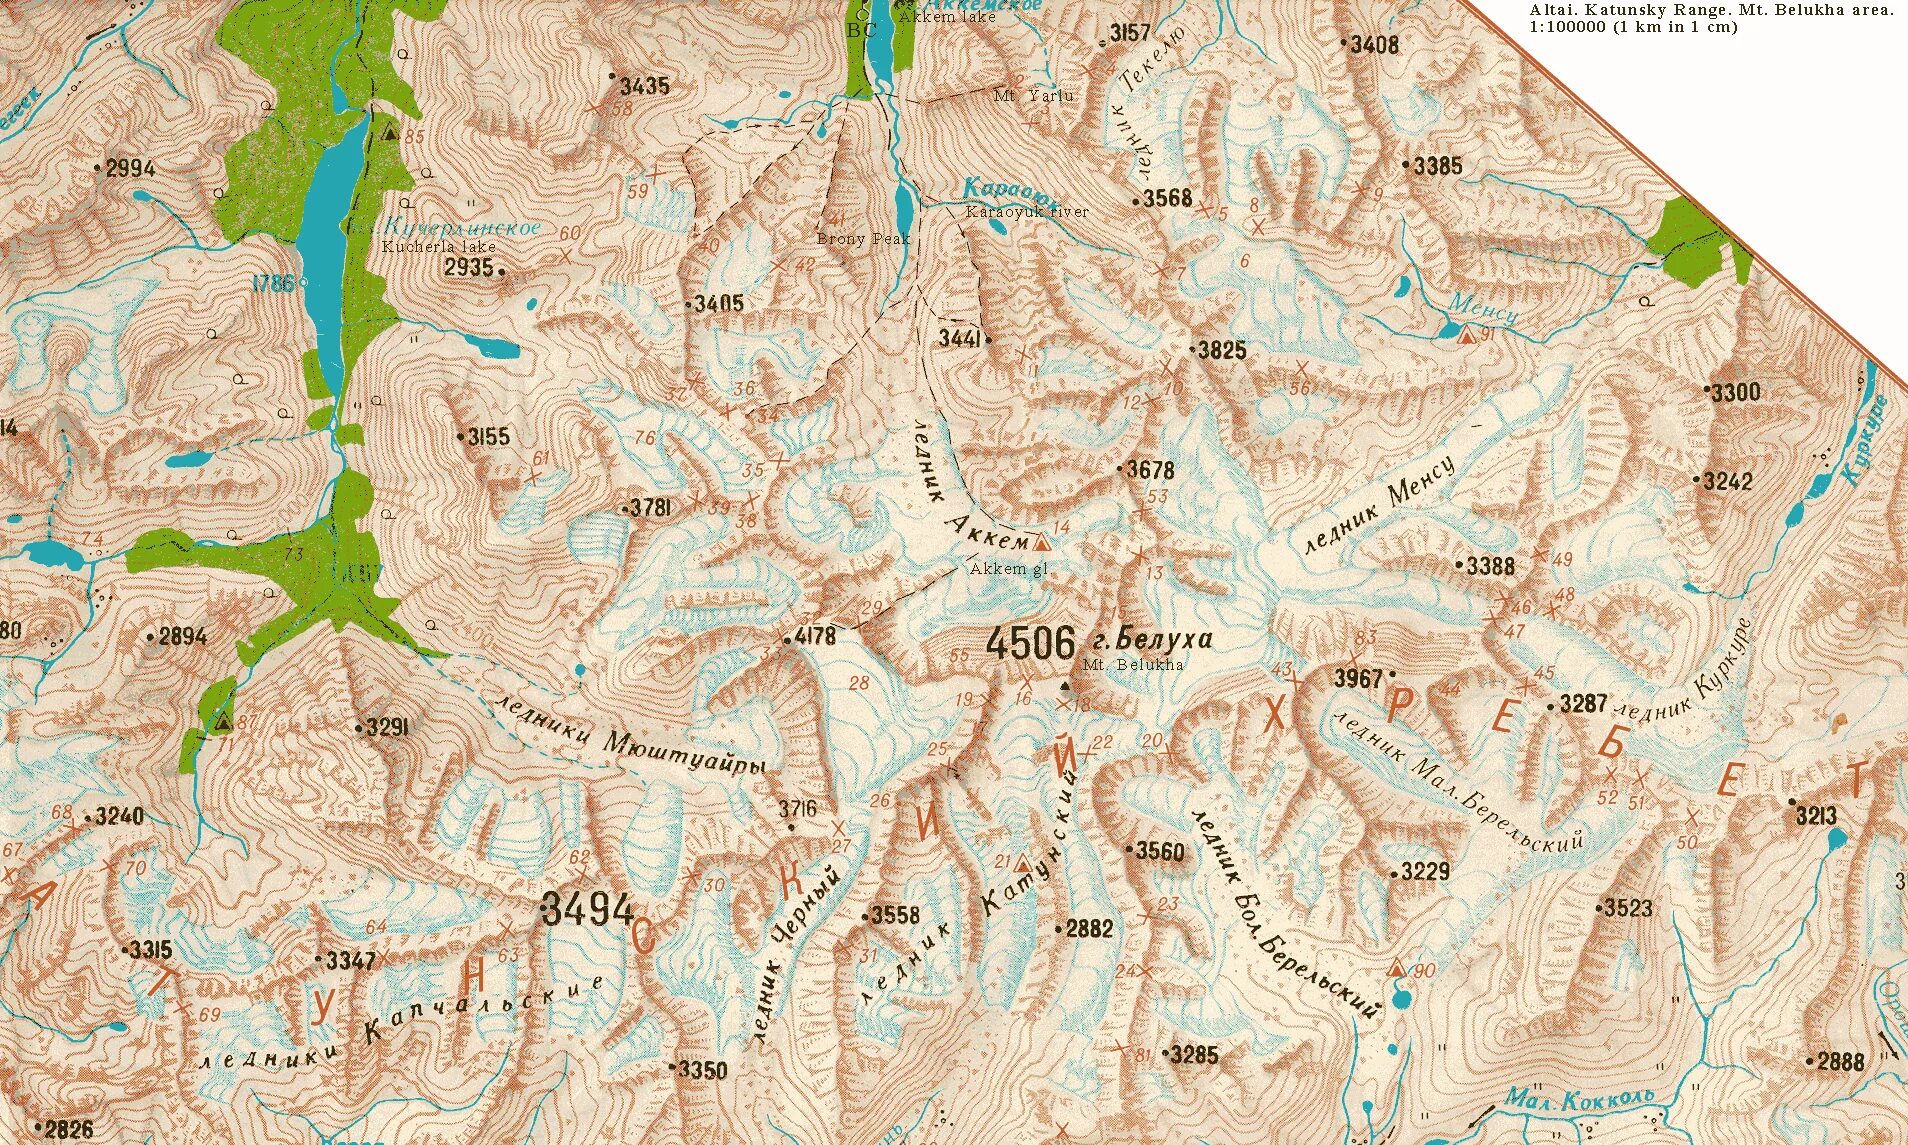 Местоположение горного алтая. Гора Белуха на карте. Гора Белуха на карте России. Алтай Белуха на карте. Горы Алтай на карте.